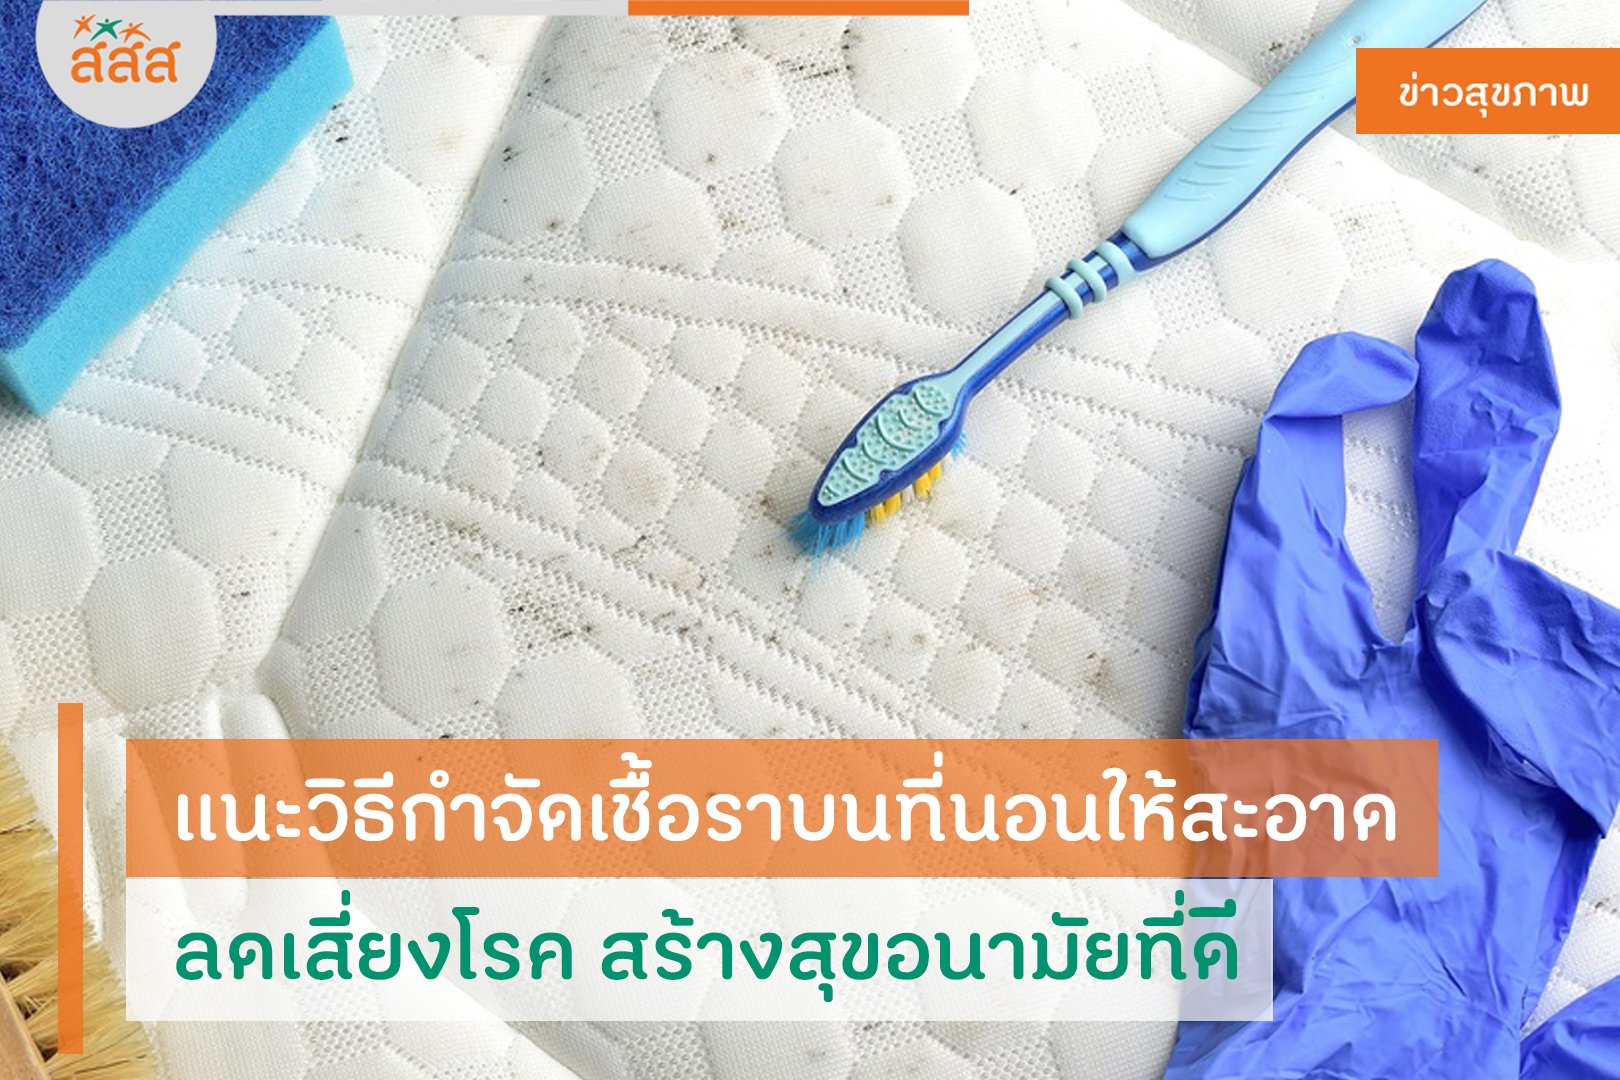 แนะวิธีกำจัดเชื้อราบนที่นอนให้สะอาด ลดเสี่ยงโรค สร้างสุขอนามัยที่ดี thaihealth